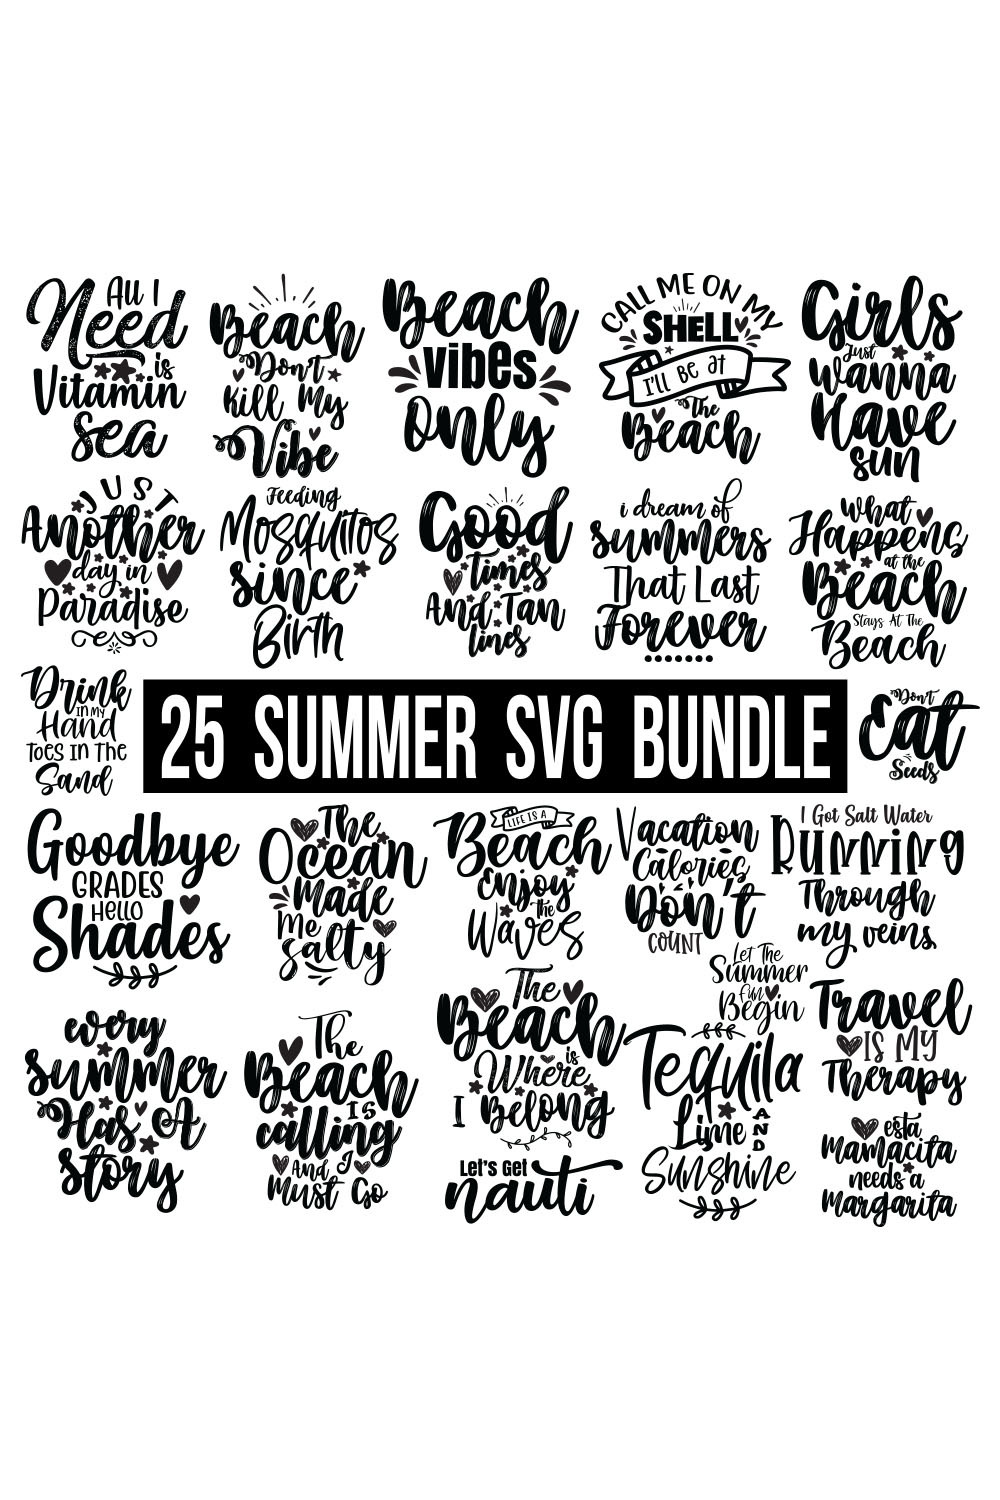 Summer SVG Bundle, Beach SVG Bundle, Beach SVG, Beach Life SVG, Digital File, Summer shirt svg, pinterest preview image.